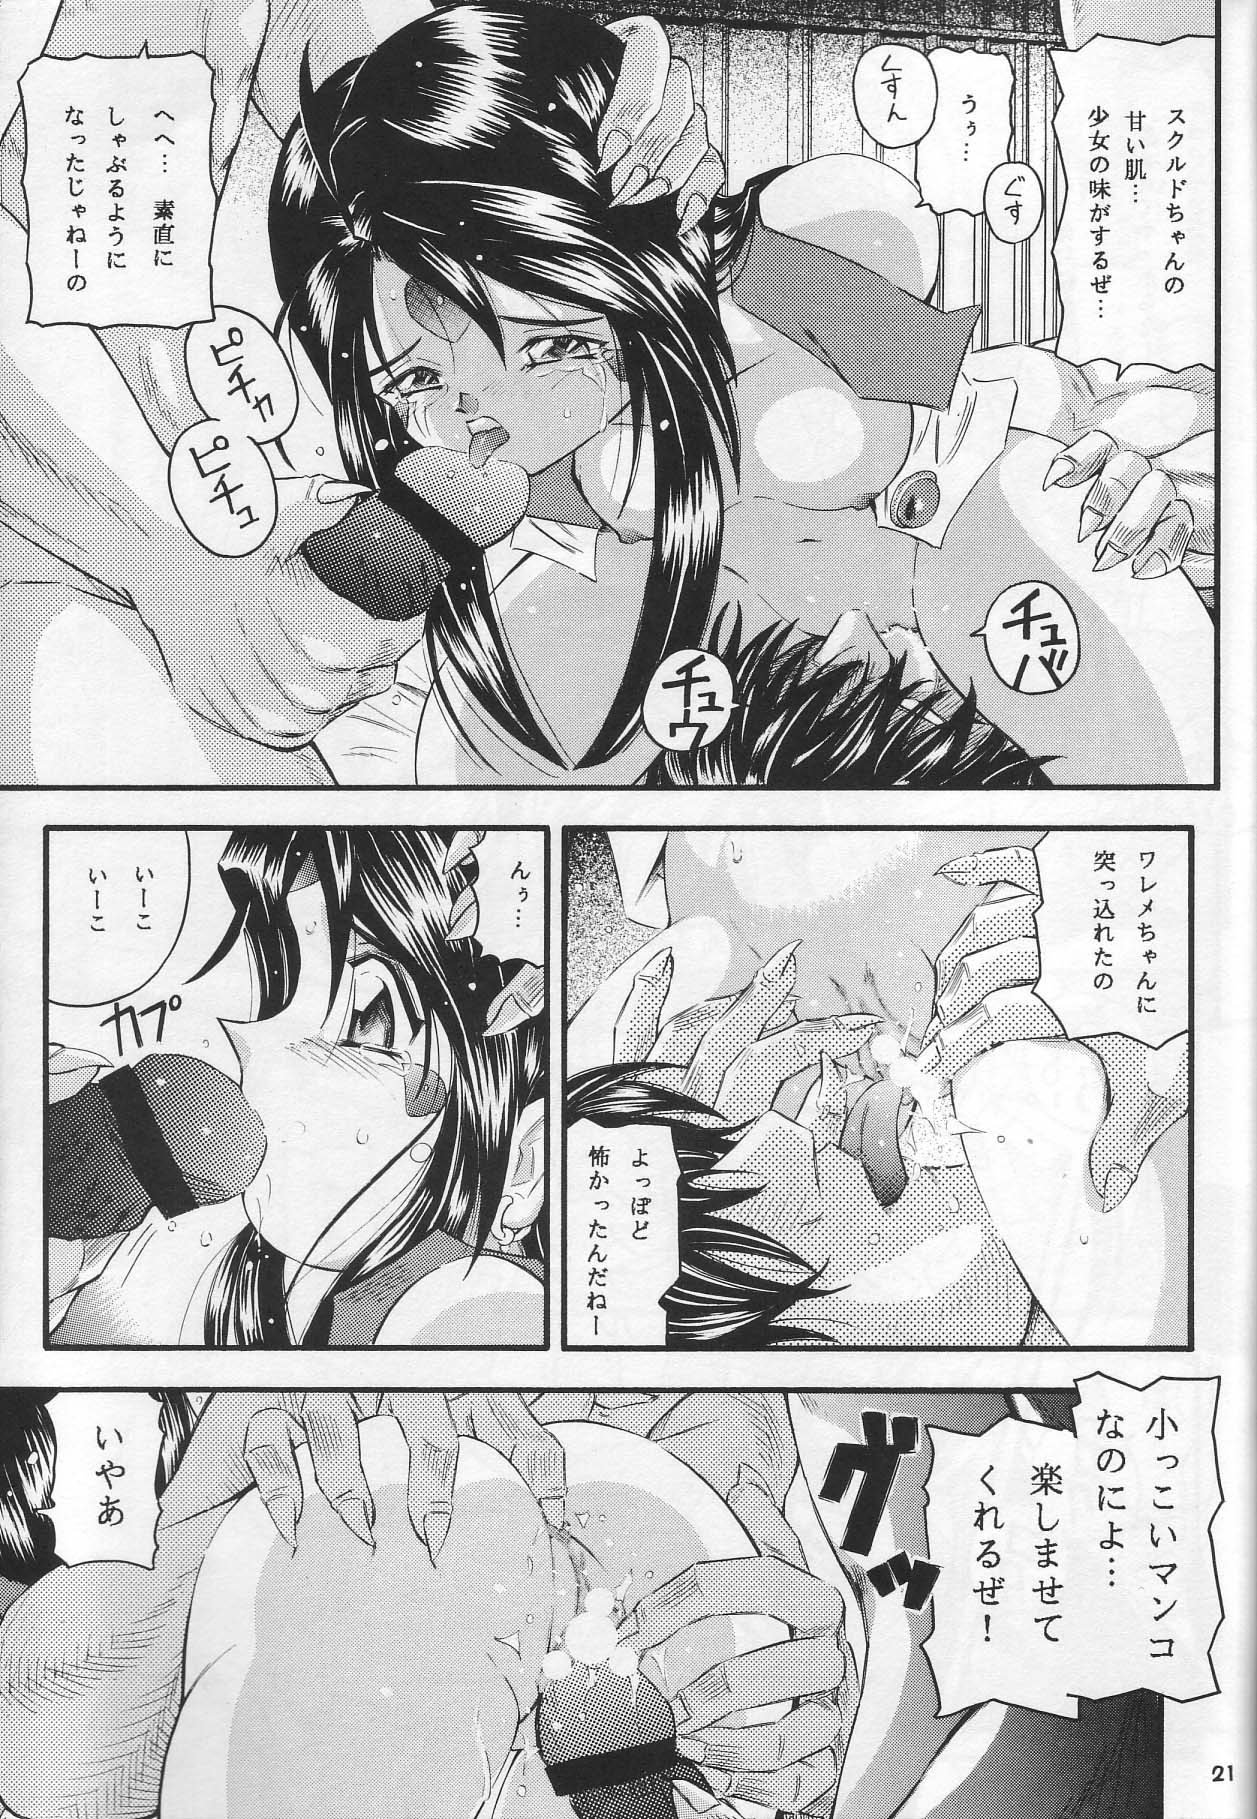 [Takitate] Than Para (Ah! Megami-sama/Ah! My Goddess) page 20 full